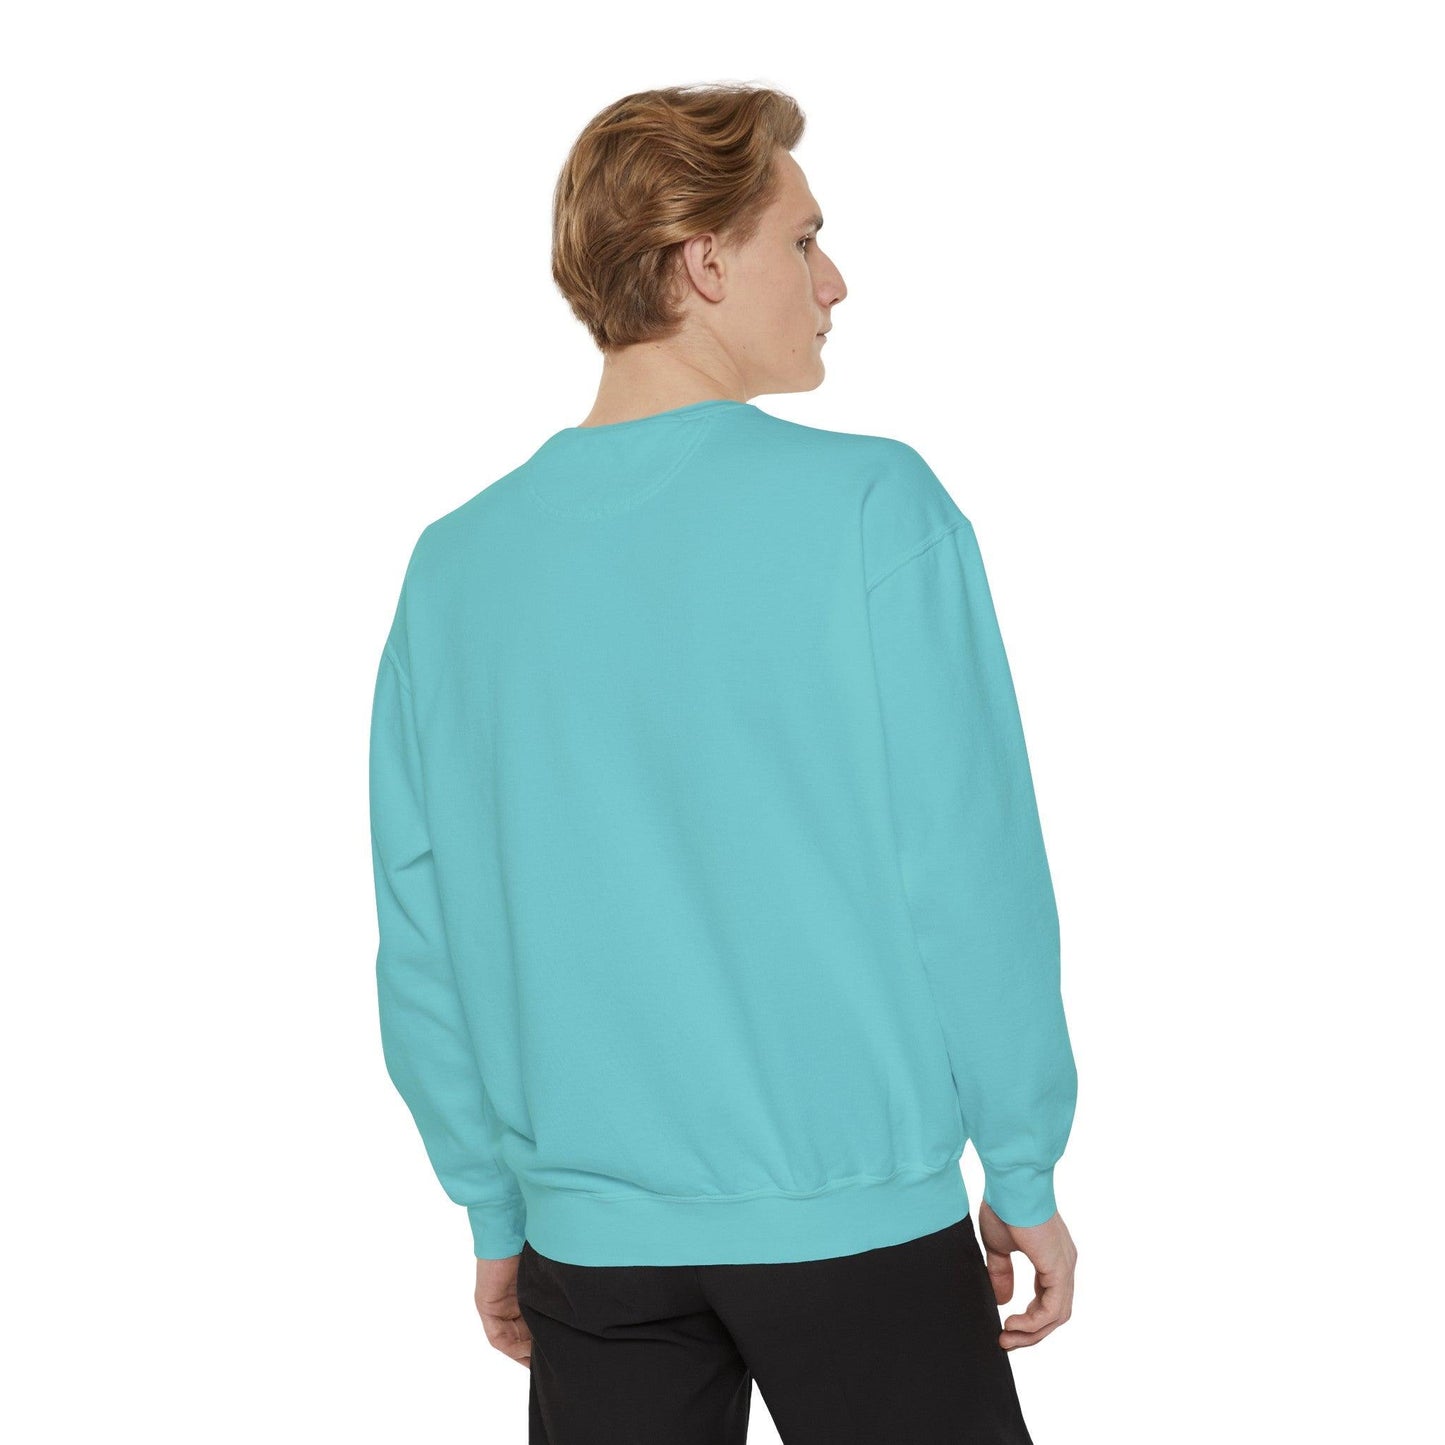 Just one more Chapter - Comfort Colors Sweatshirt - BentleyBlueCo